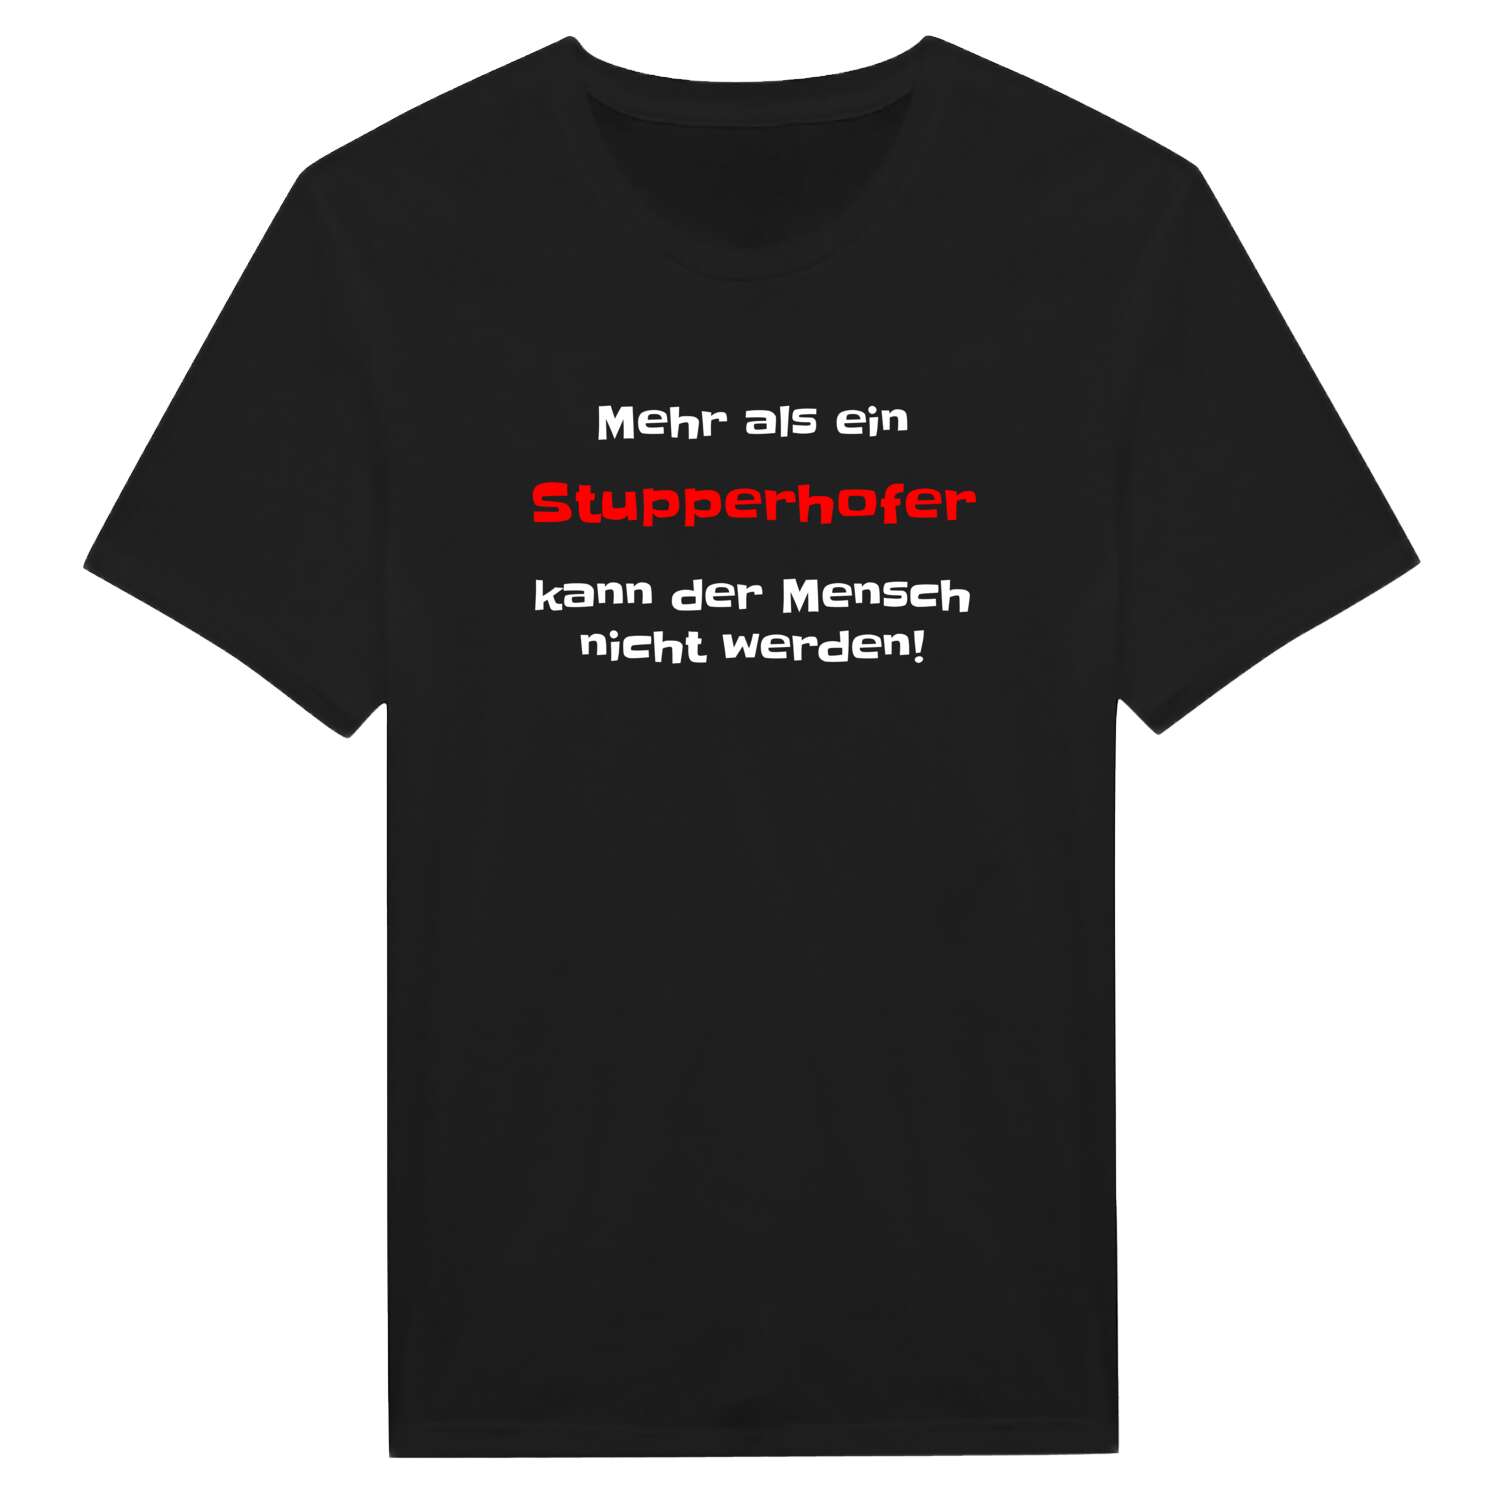 Stupperhof T-Shirt »Mehr als ein«